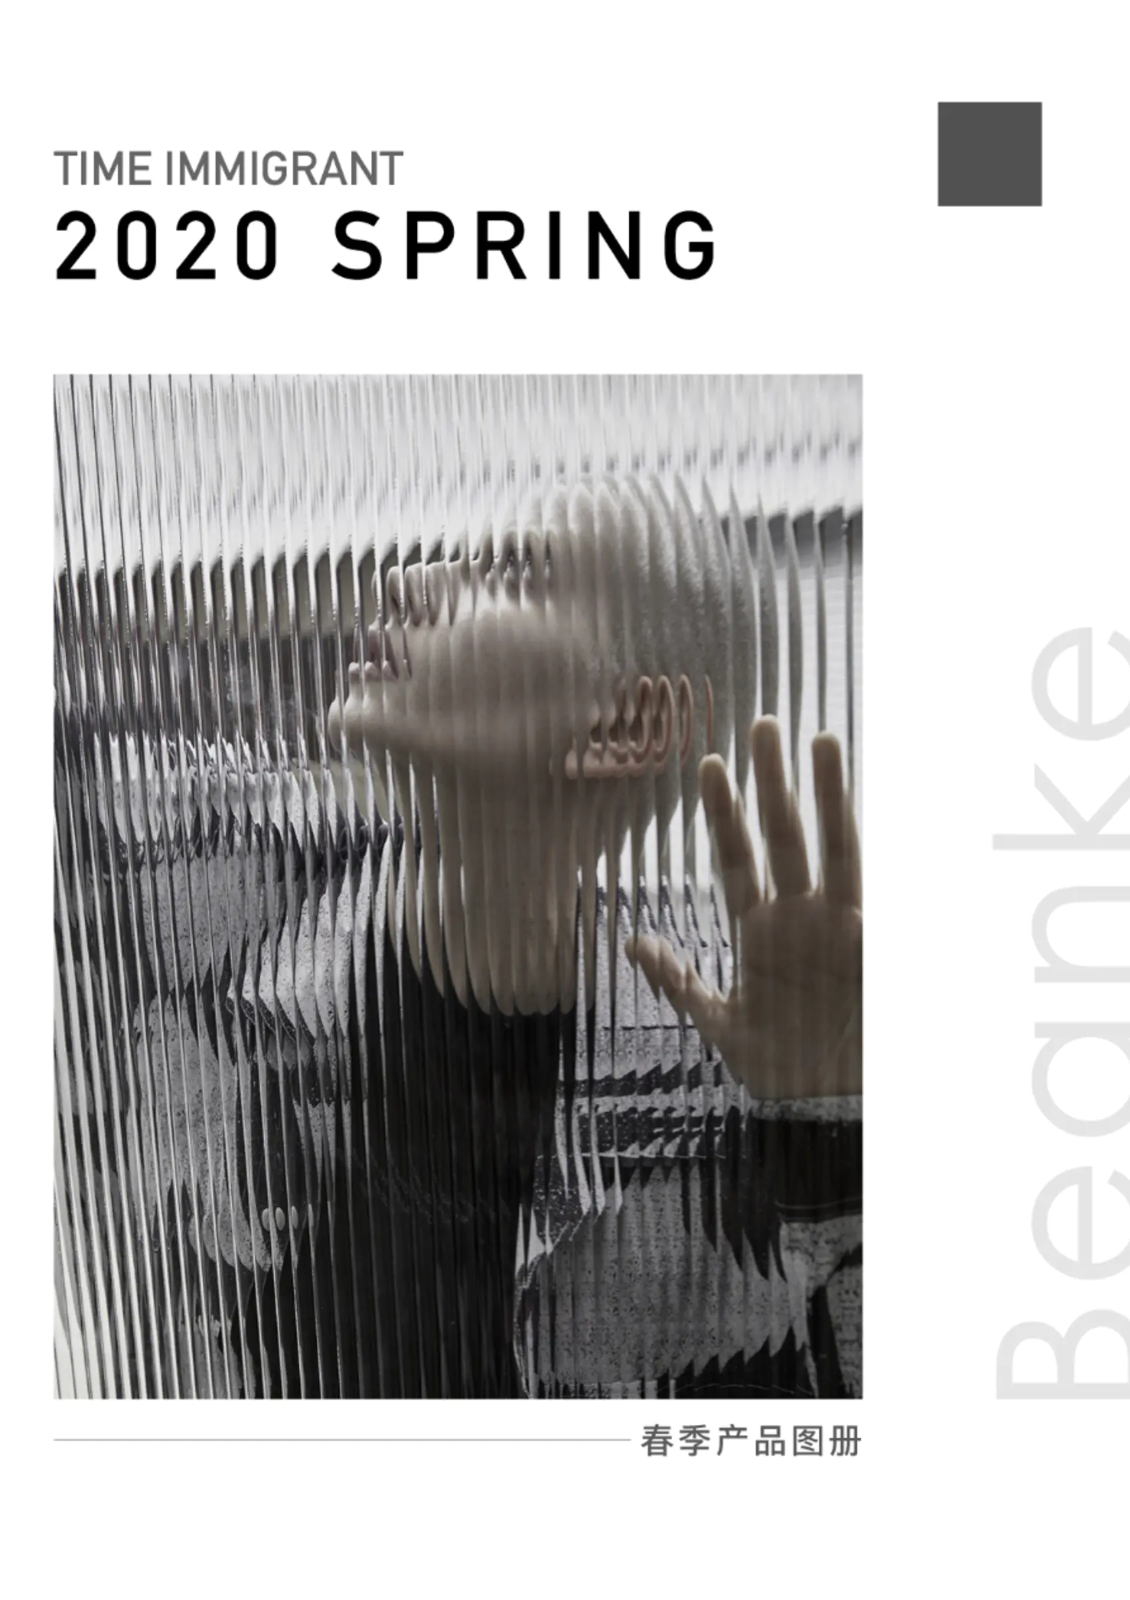 Beanke 2020 春季产品图册